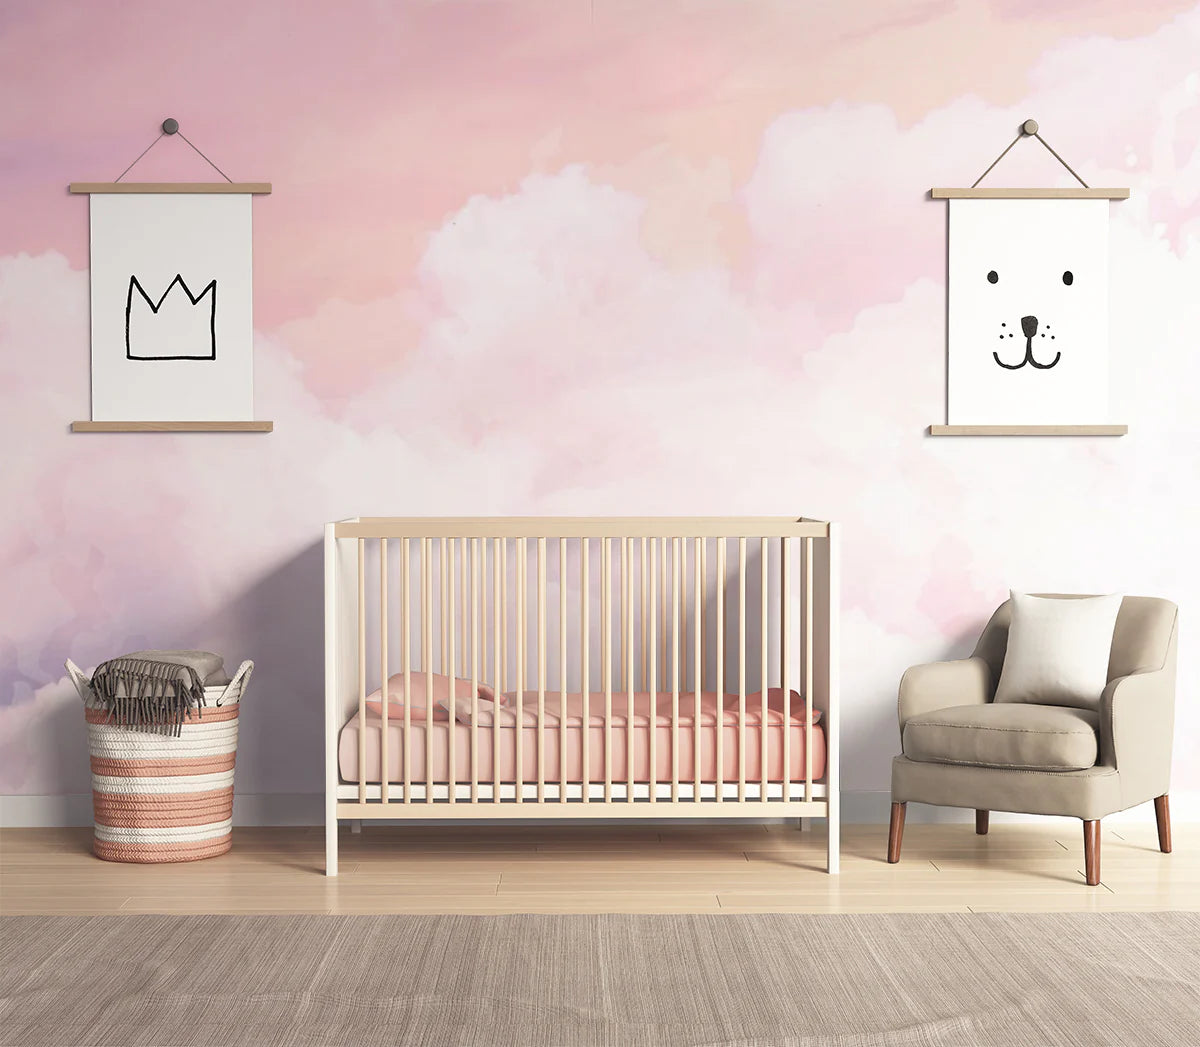 Pink Clouds, Mural Wallpaper in nursery room